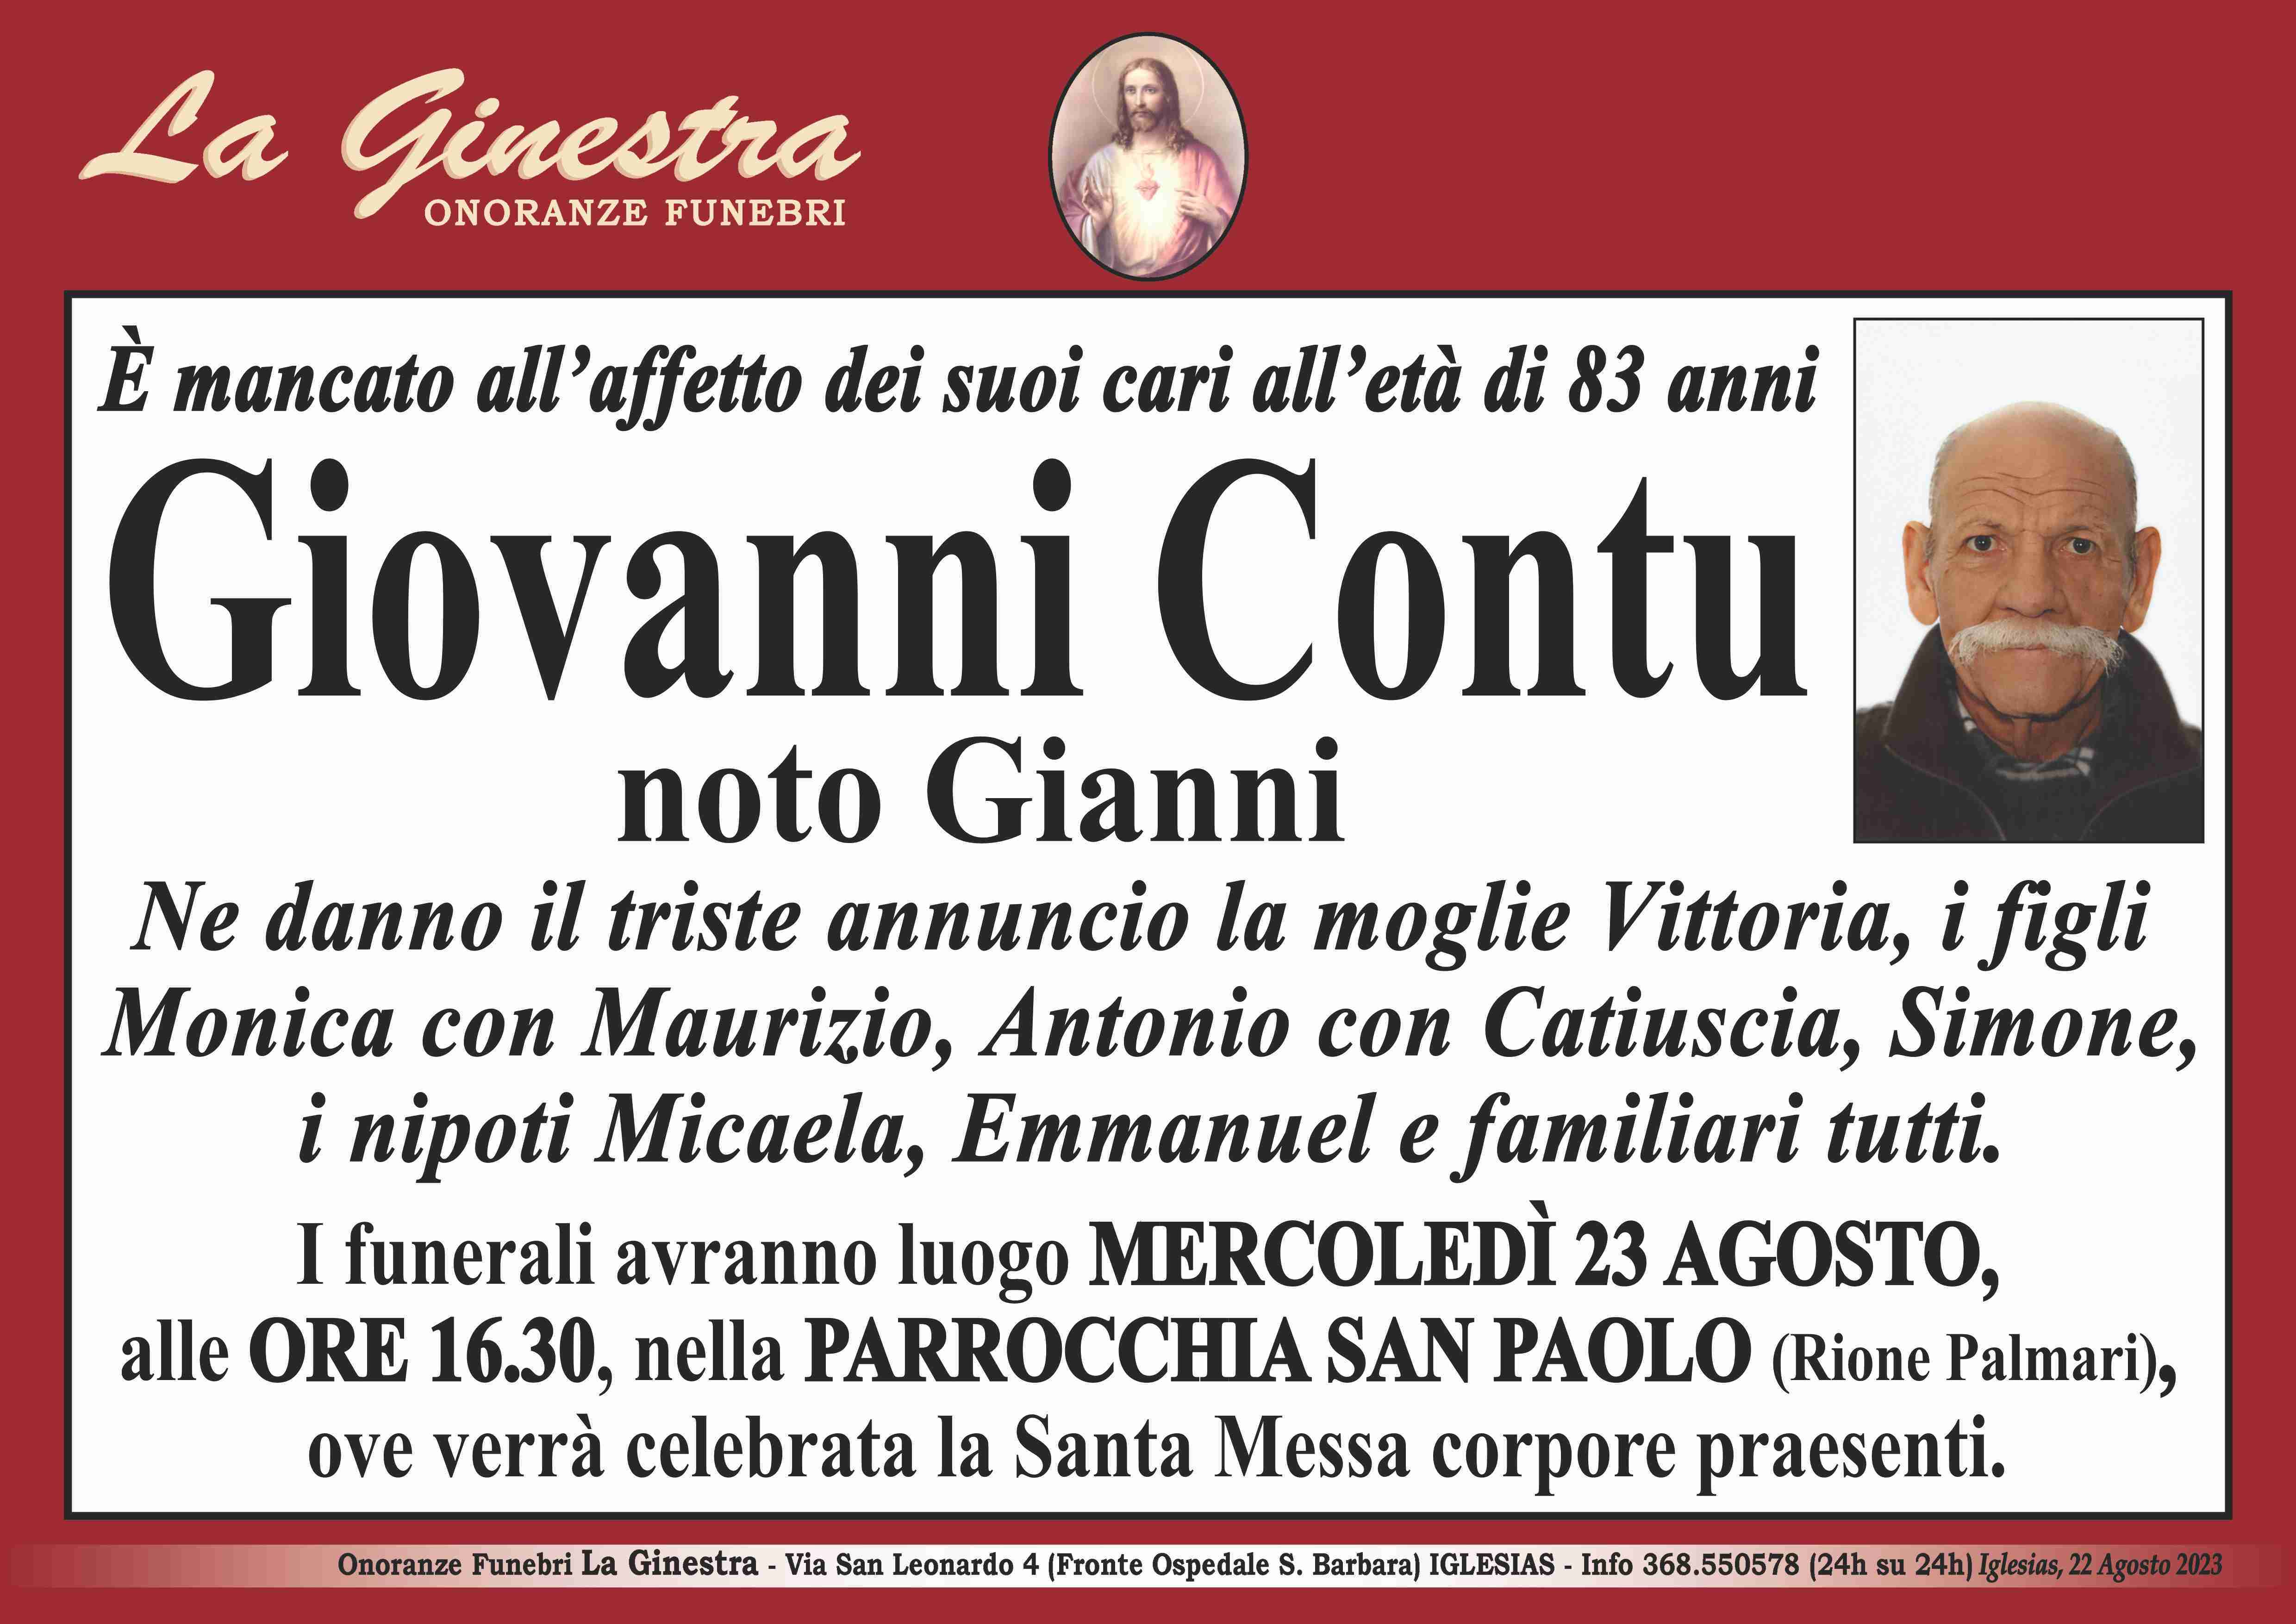 Giovanni Contu